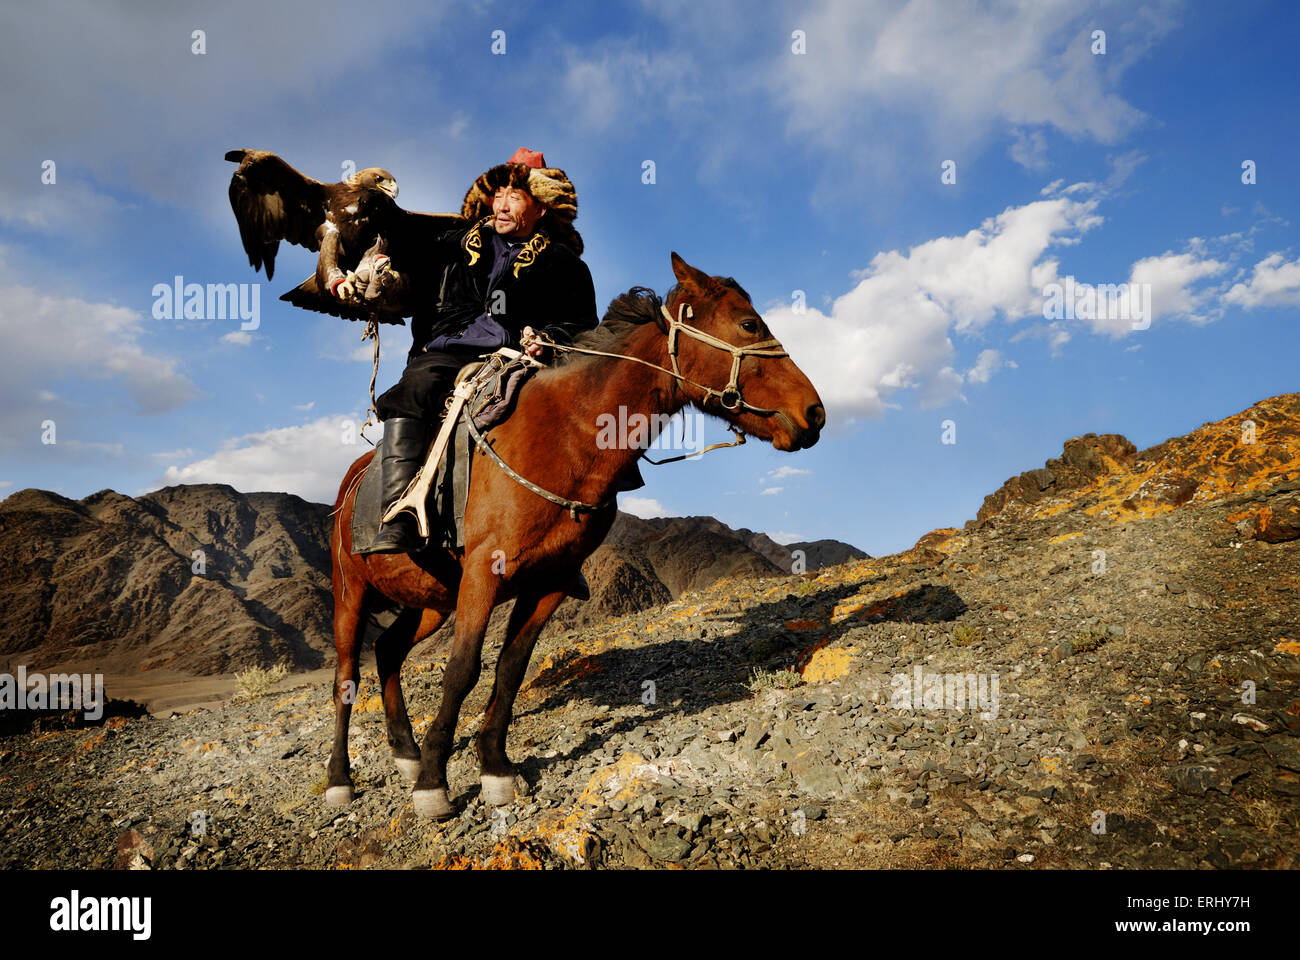 Traditionnellement les hommes kazakh chasser les renards et les loups l'aigle royal. Olgei,l'ouest de la Mongolie. Banque D'Images